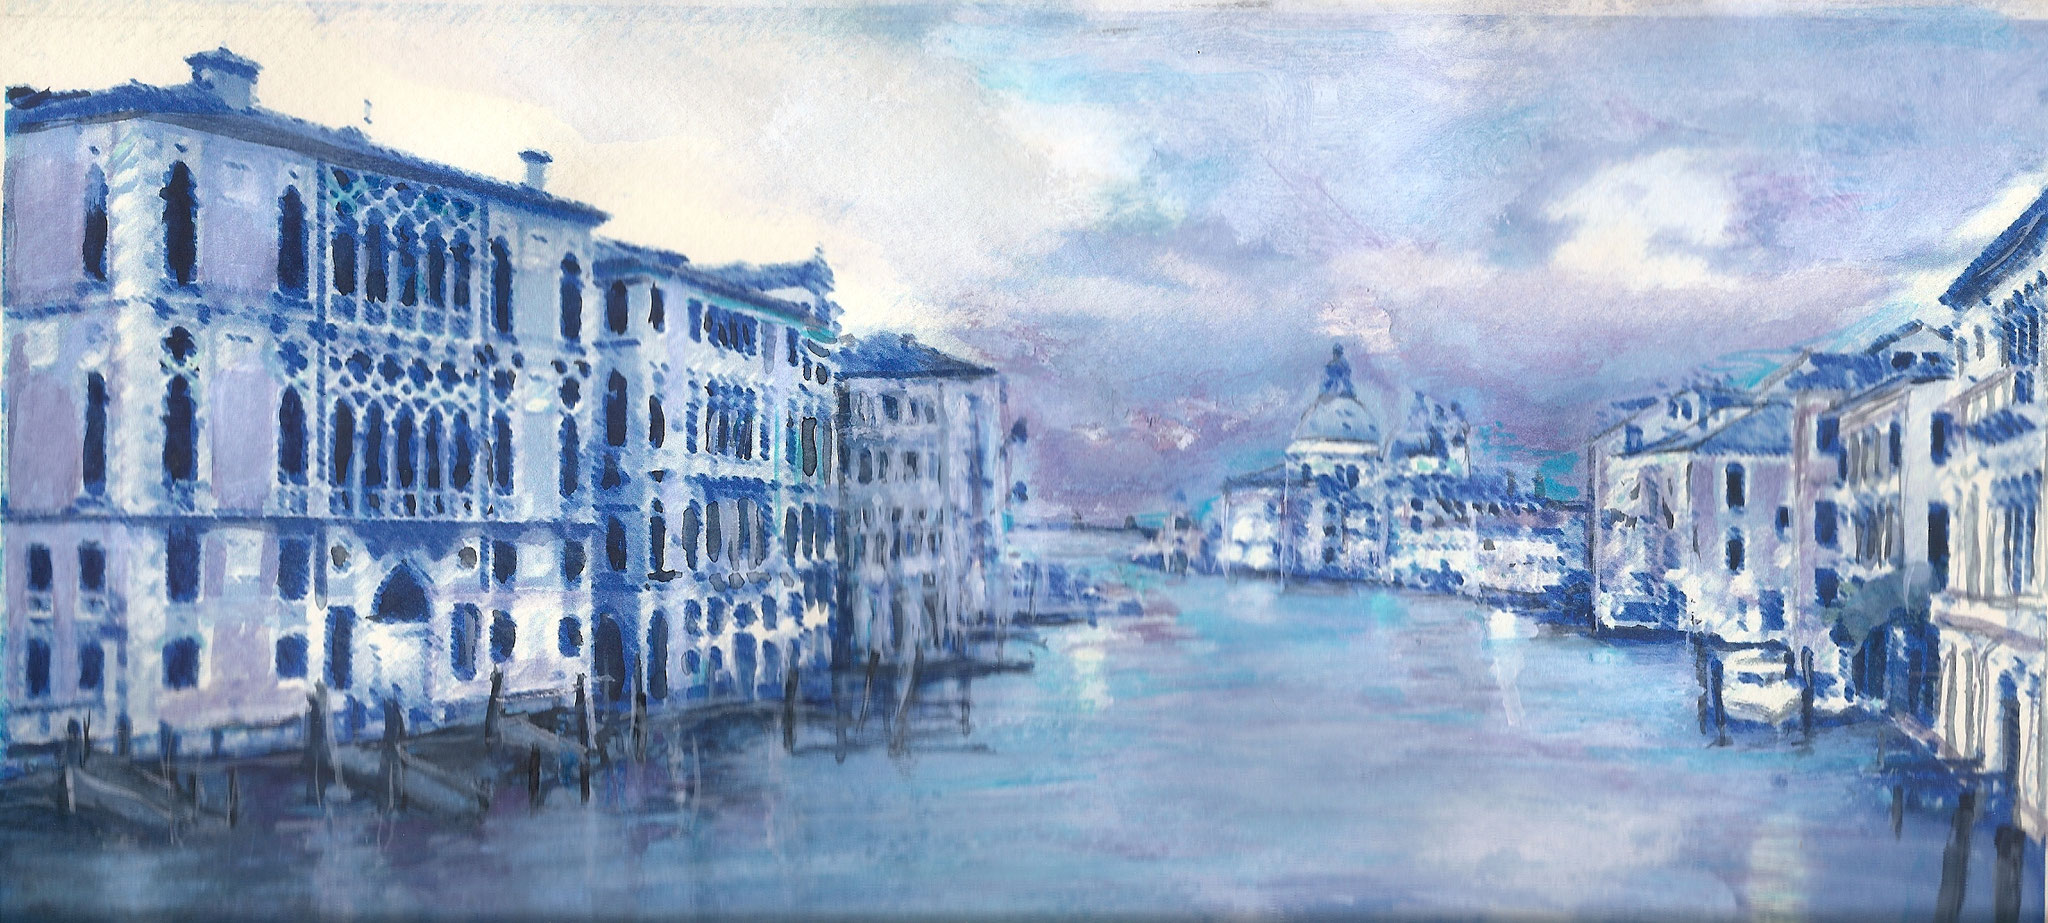 Venedig Canal Grande im Winter, Mischtechnik/Aquarell von Anita Alt 